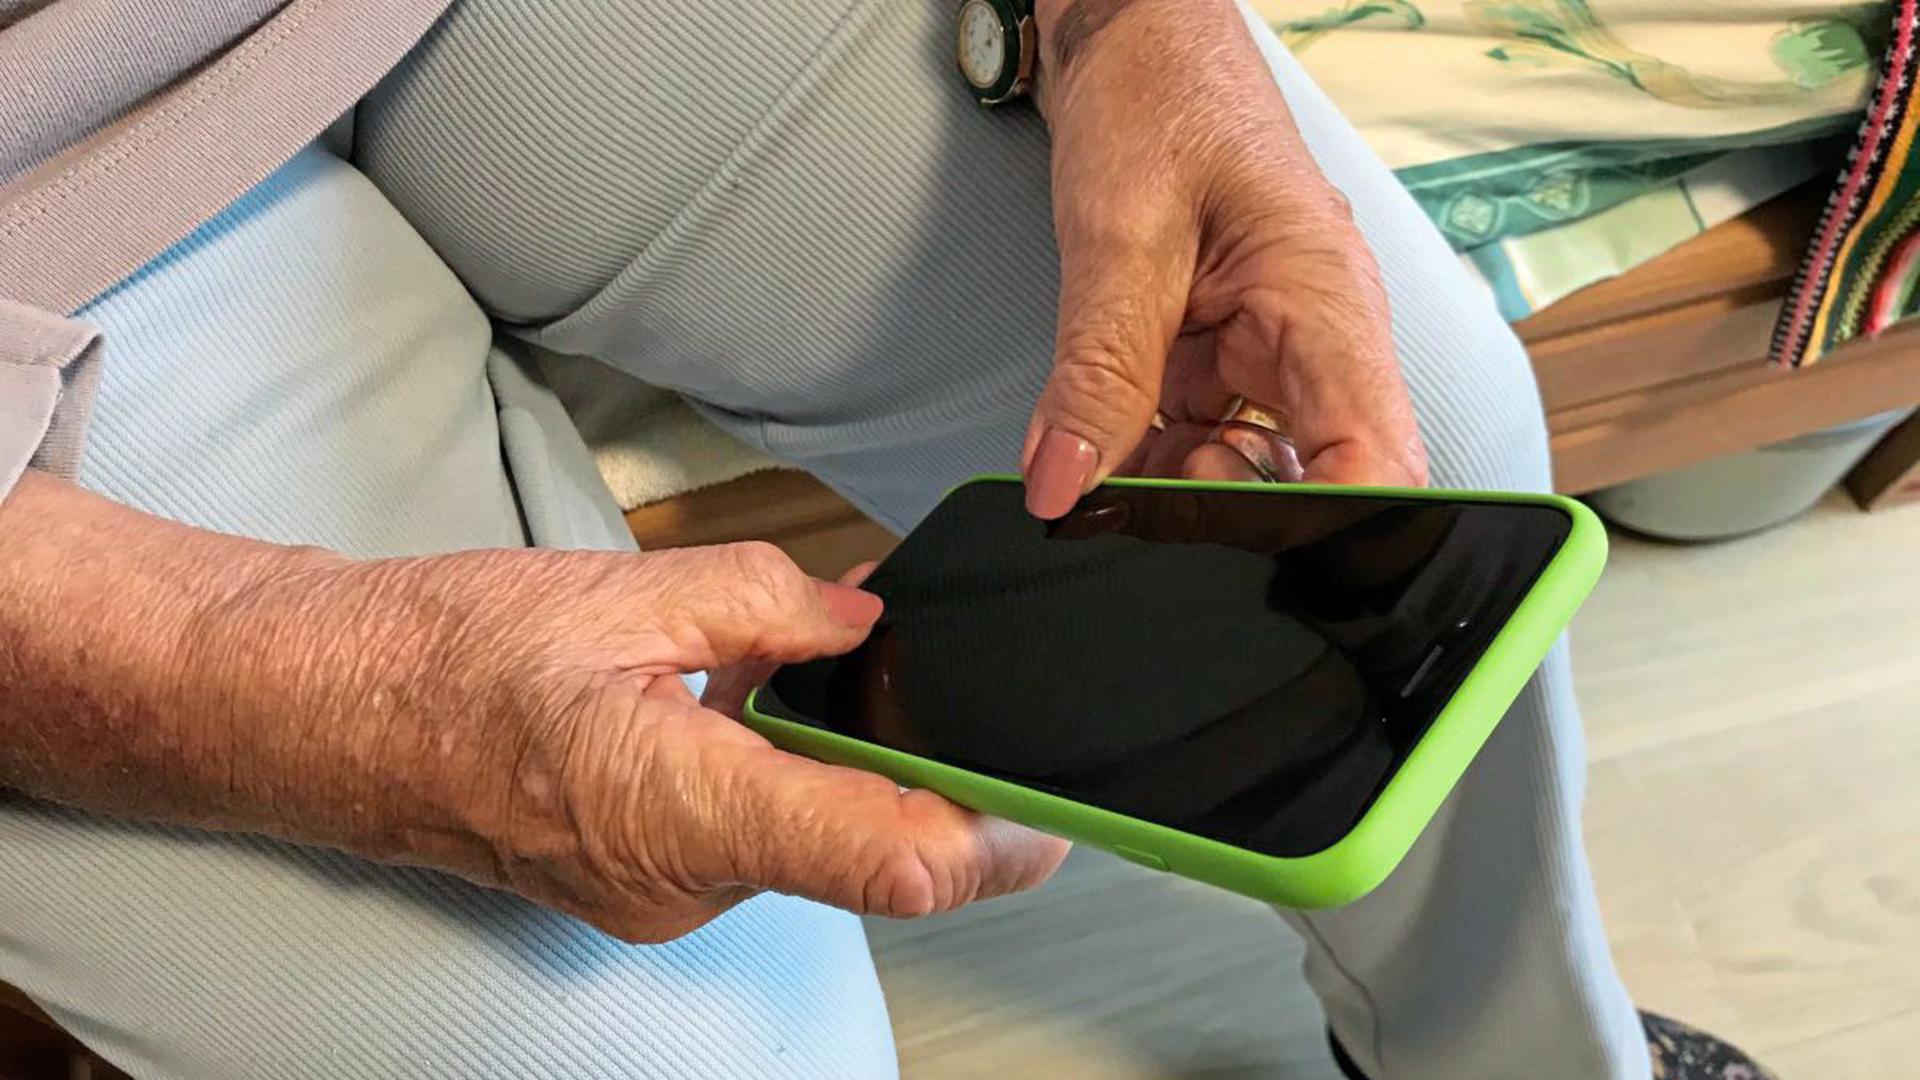 Rosemarie Erb hält ihr iPhone in der Hand. Die 84-Jährige wohnt im Pflegeheim "Alte Mälzerei" in Karlsruhe.